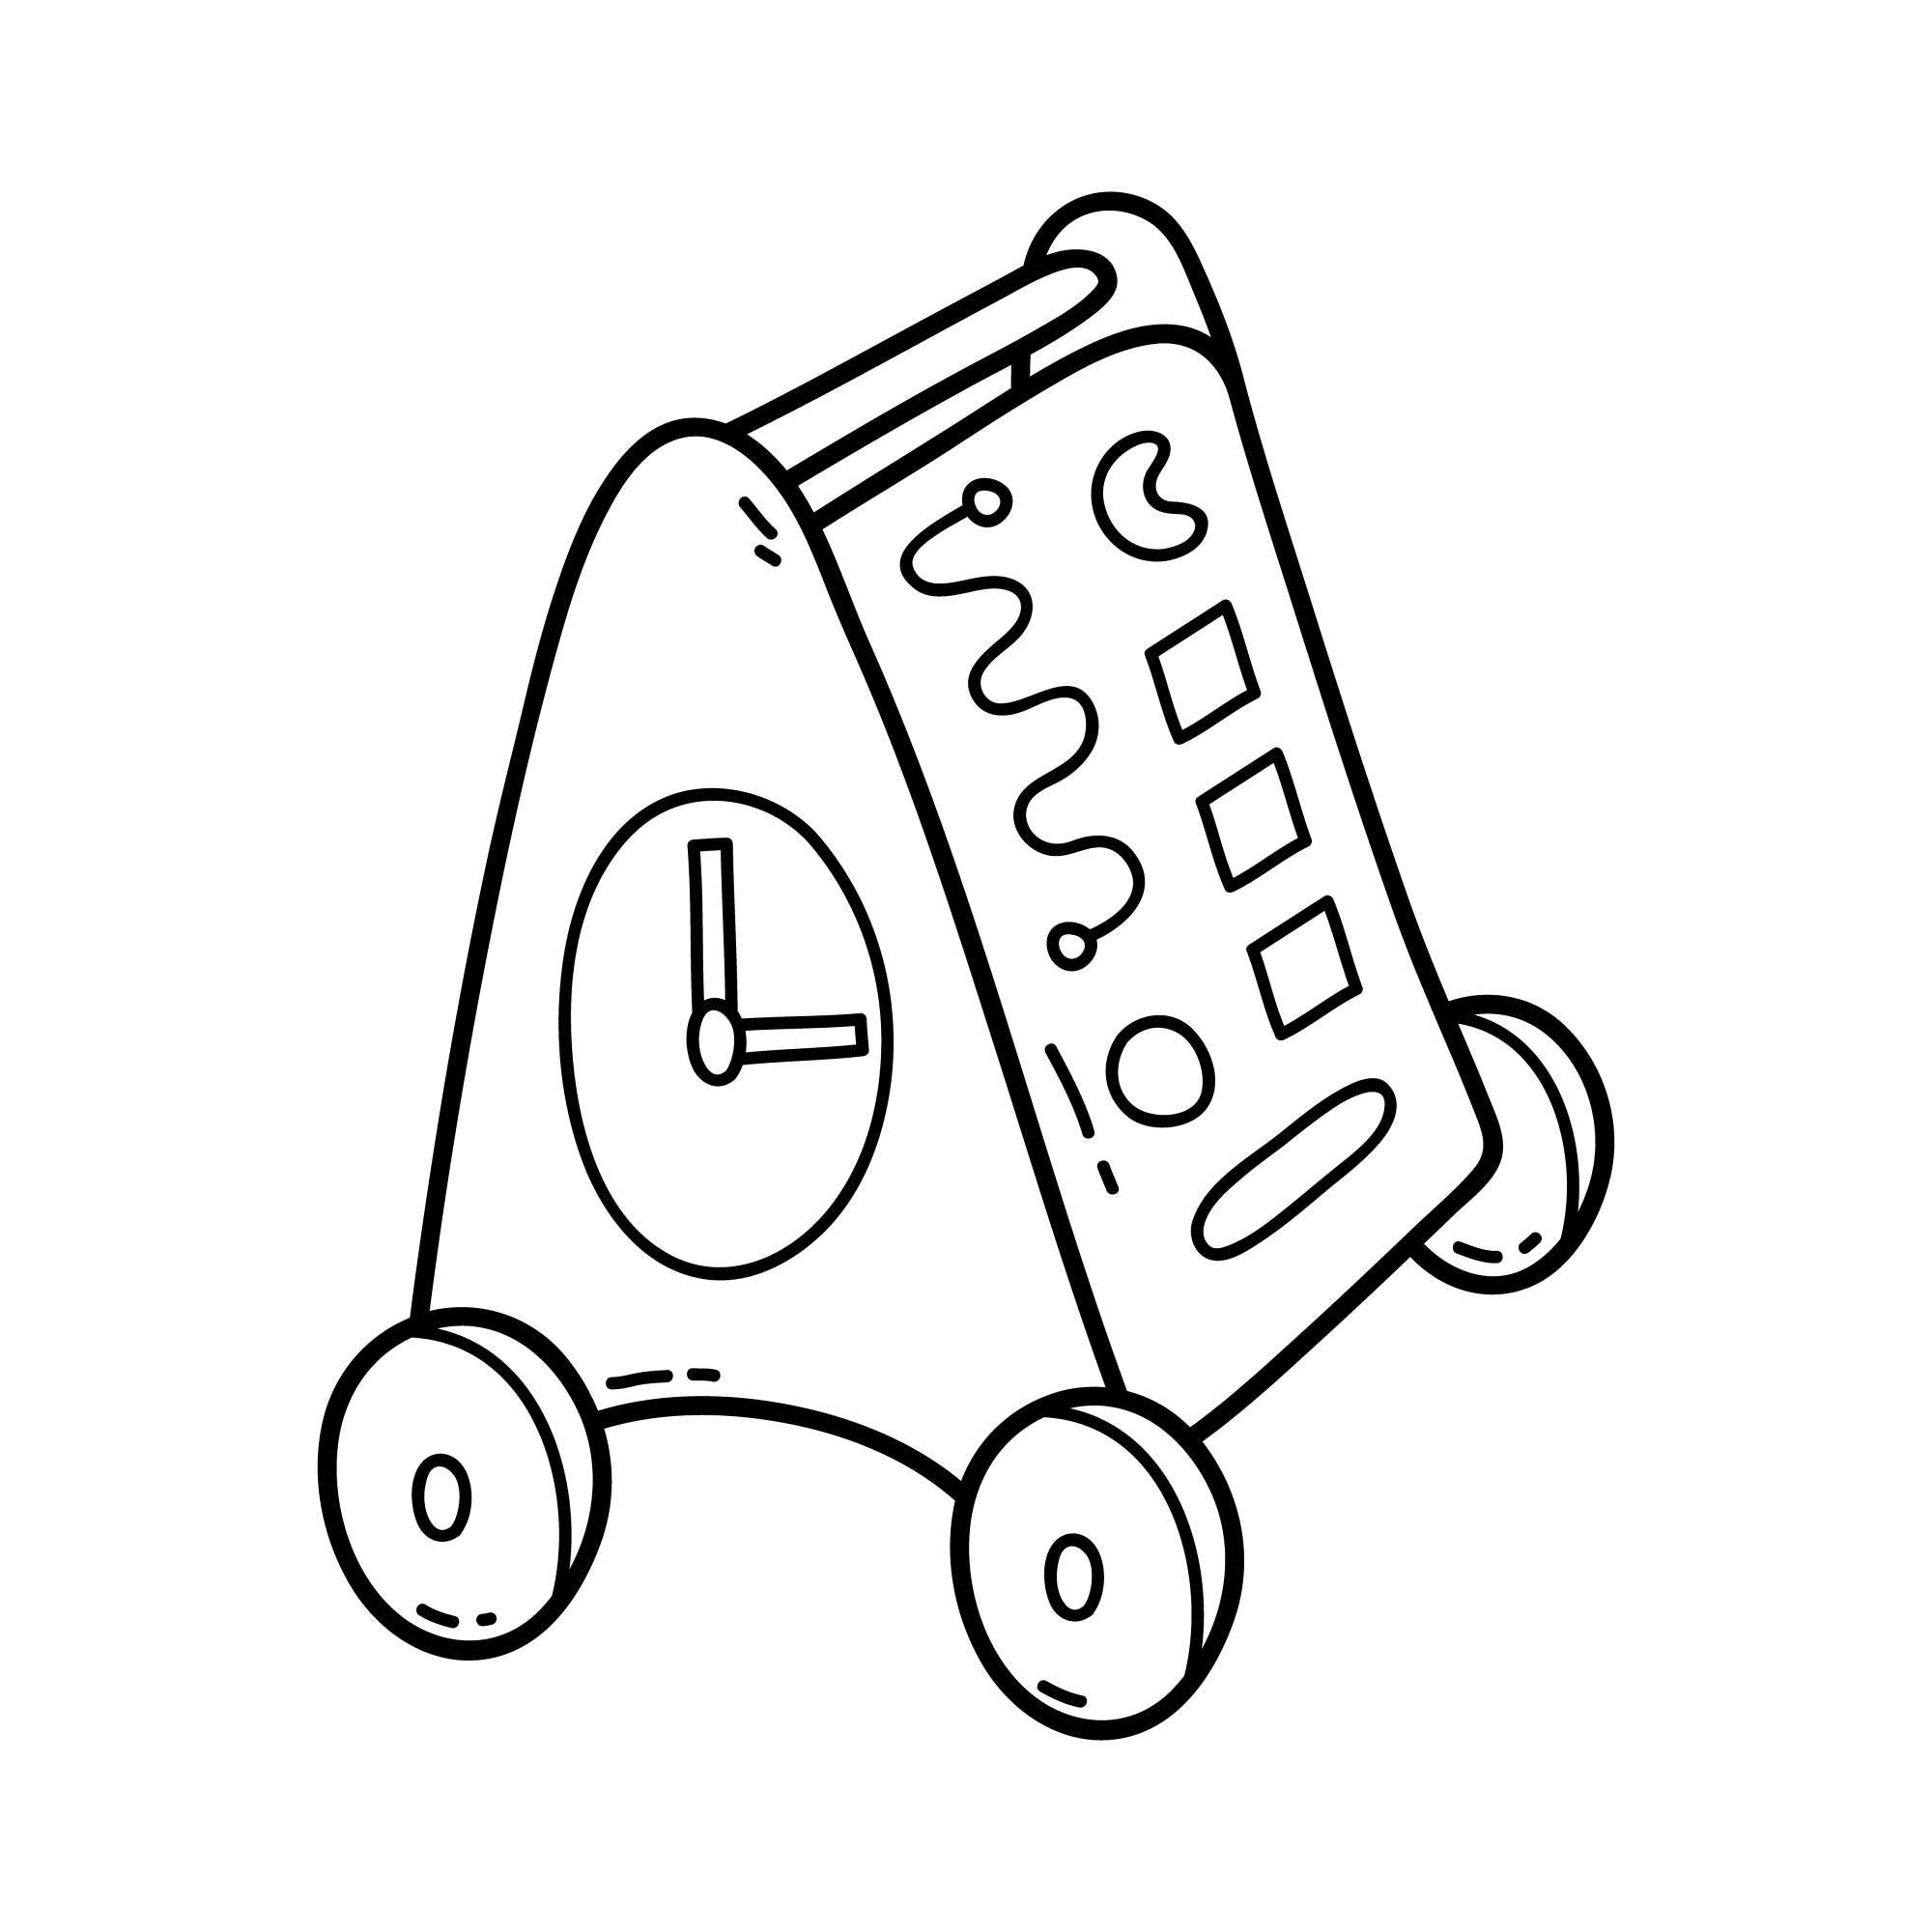 Раскраска для детей: игрушка детский бизиборд